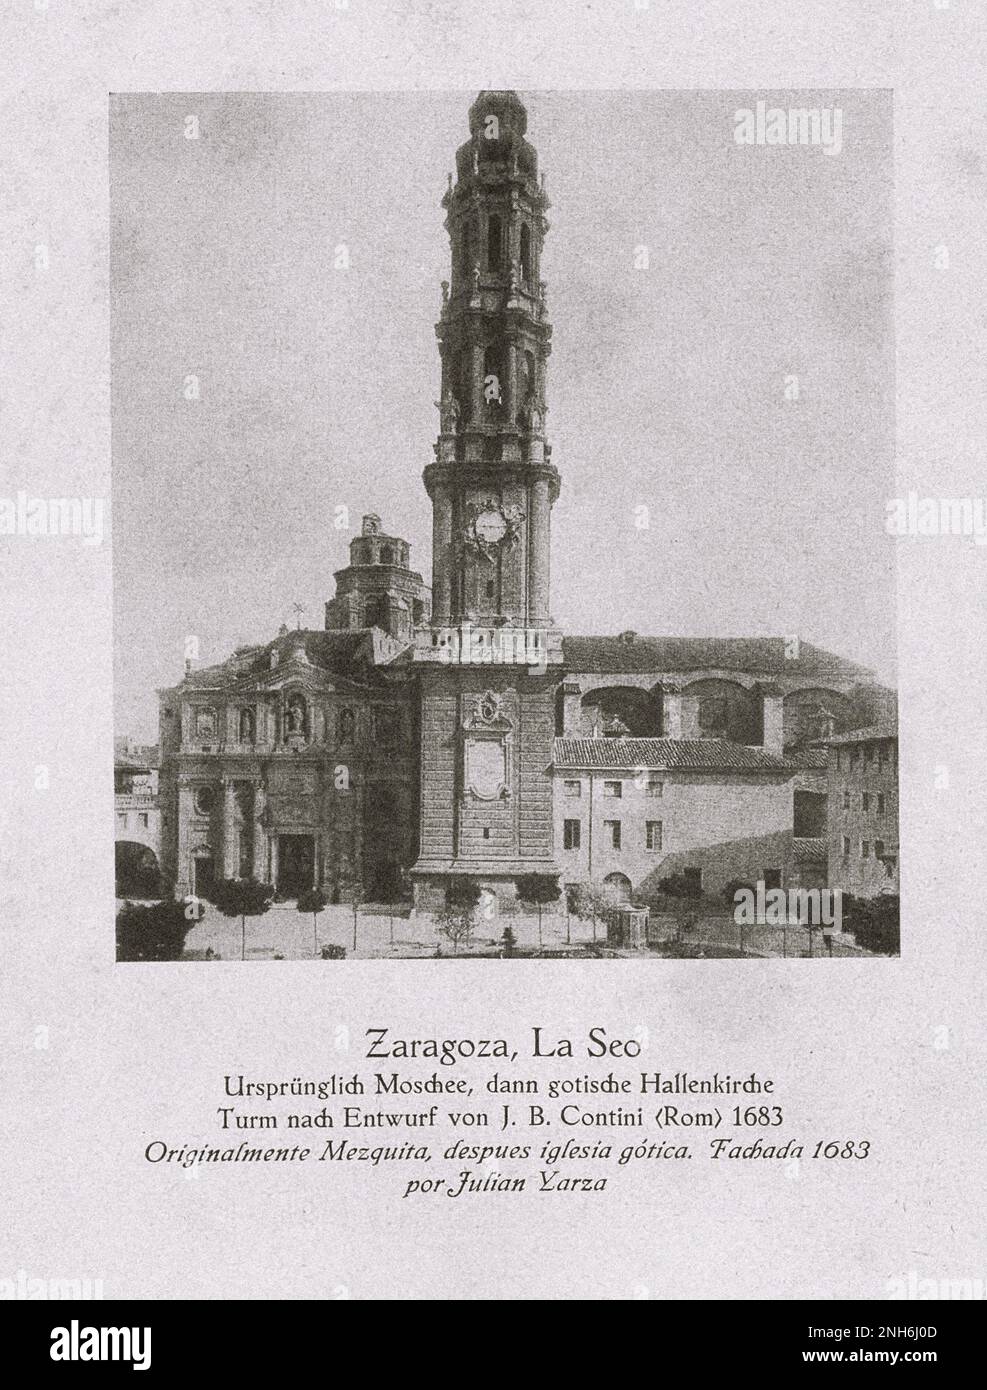 Architektur des alten Spaniens. Kathedrale des Erlösers von Saragoza (Kathedrale del Salvador oder La Seo de Zaragoza). Ursprünglich eine Moschee, dann ein gotischer Kirchturm, entworfen von J.B. Contini (Rom) 1683 Stockfoto